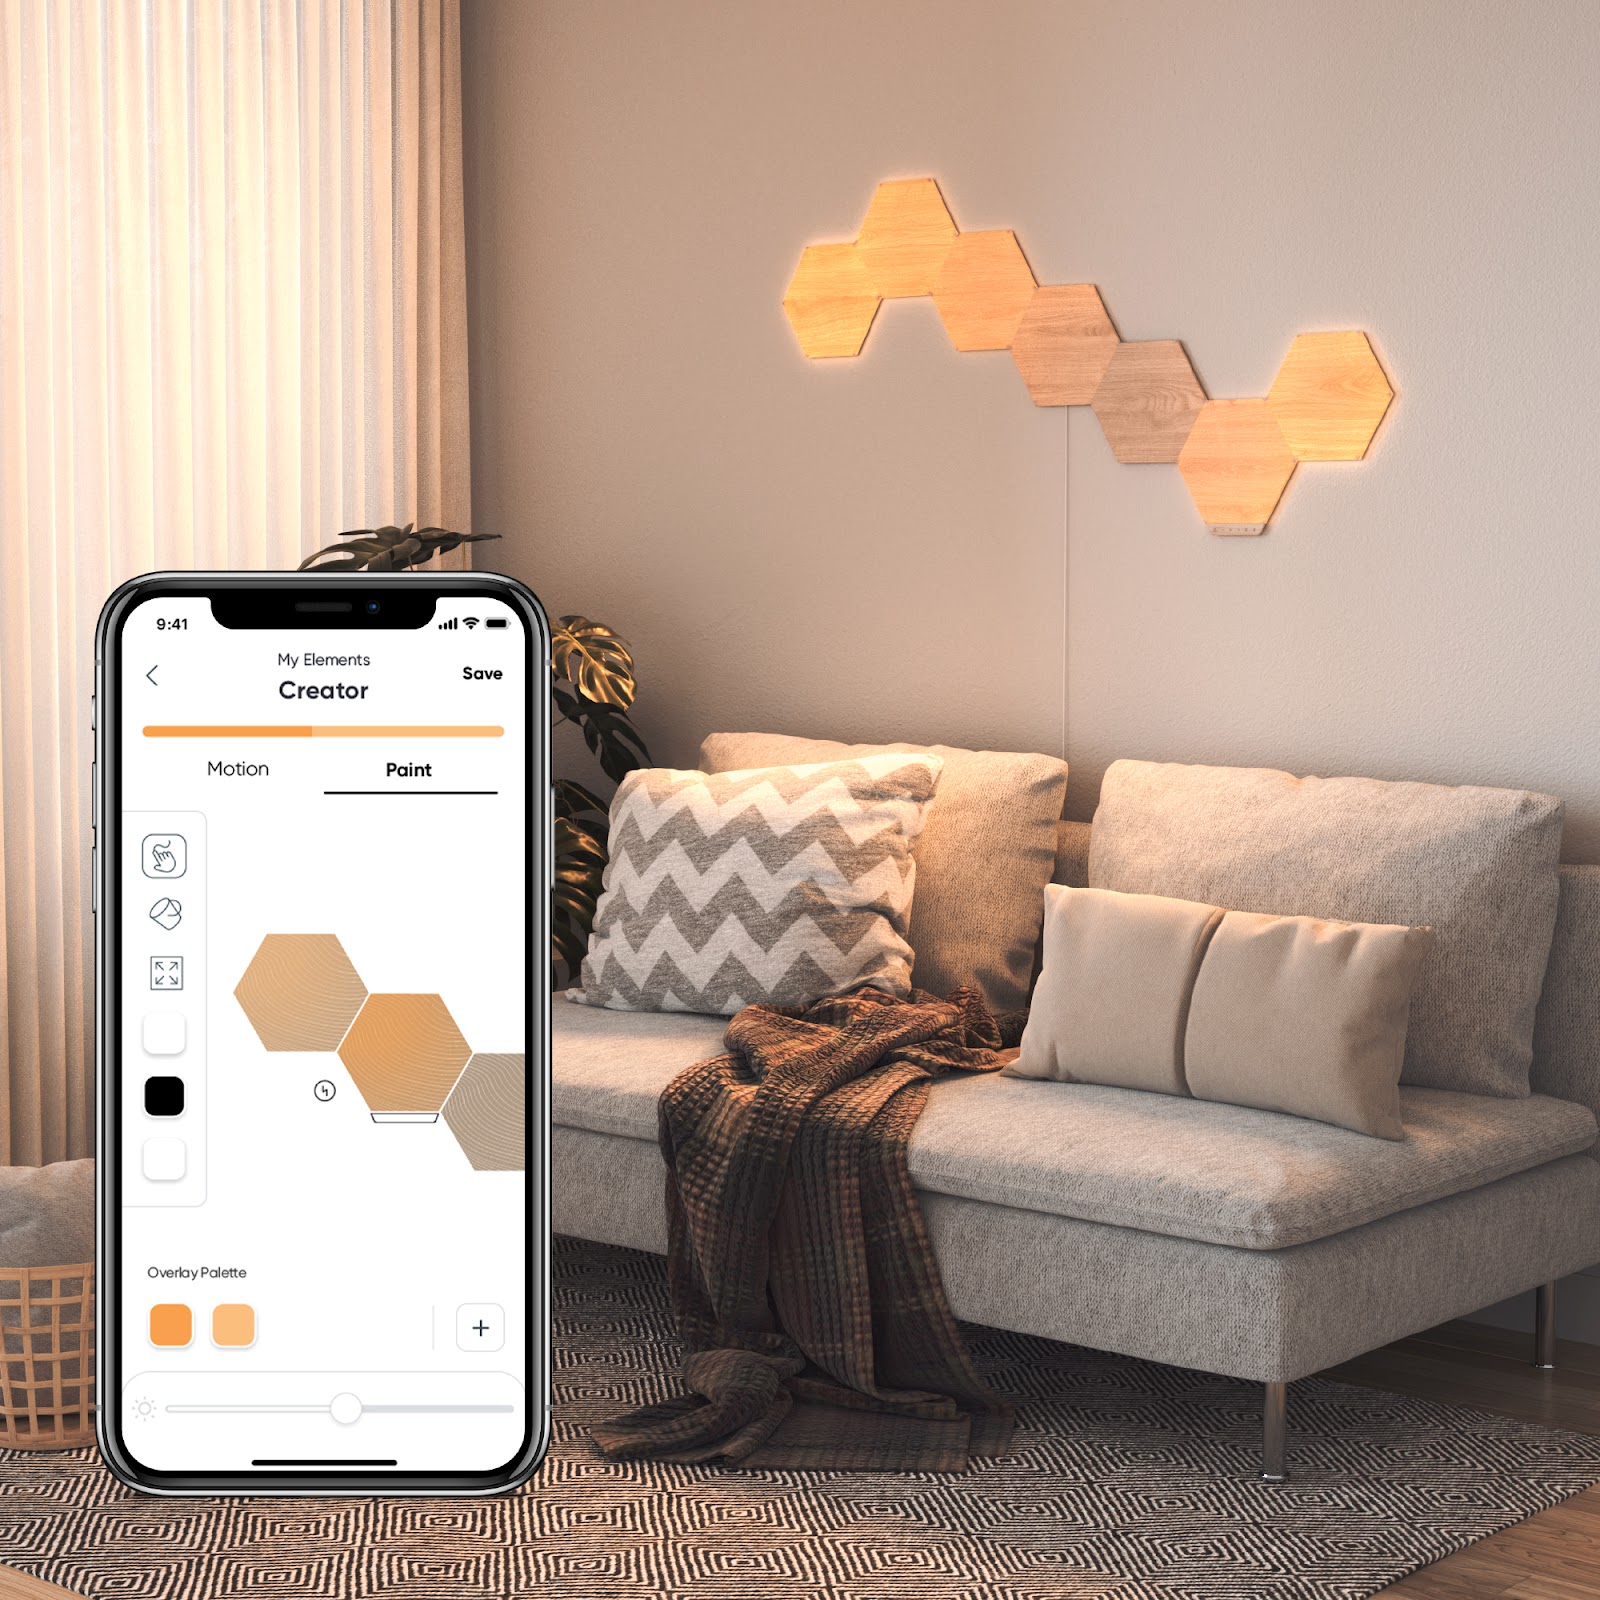 Nanoleaf Elements in a living room with the Nanoleaf mobile app